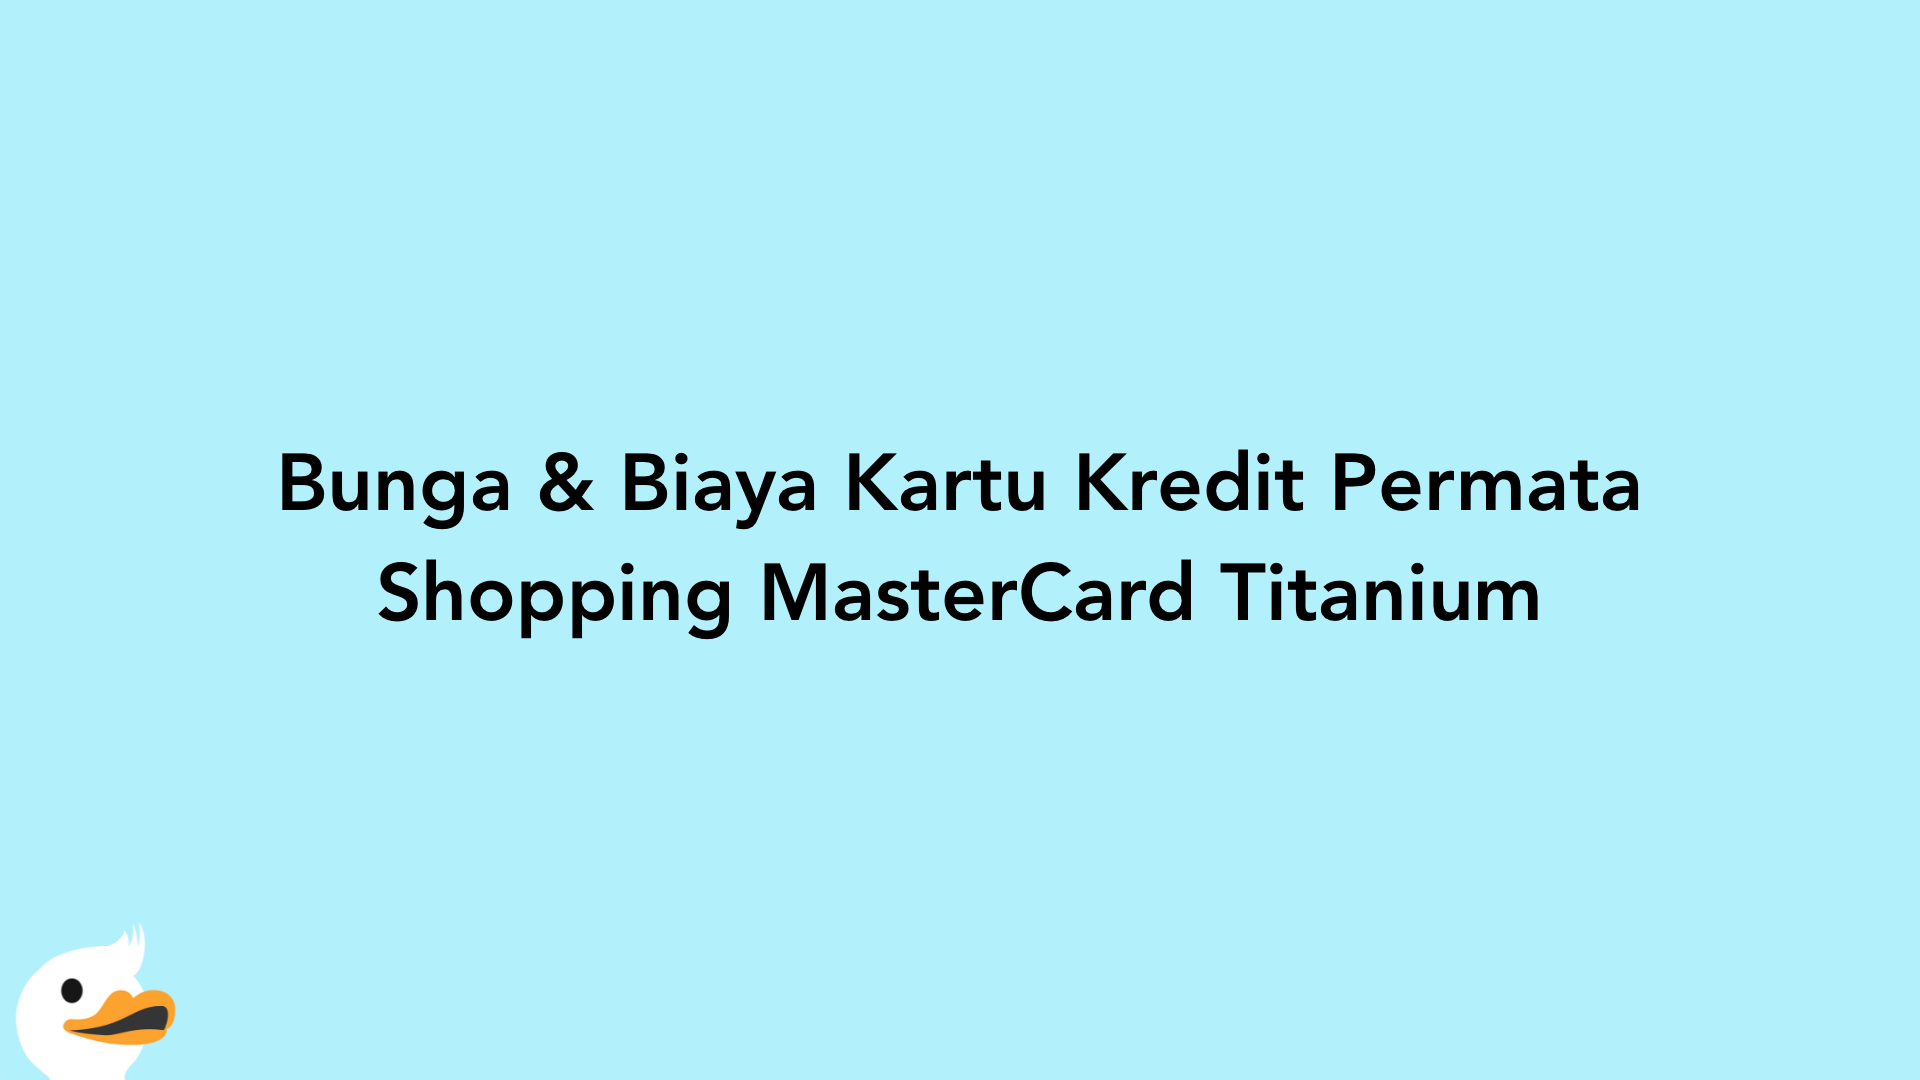 Bunga & Biaya Kartu Kredit Permata Shopping MasterCard Titanium